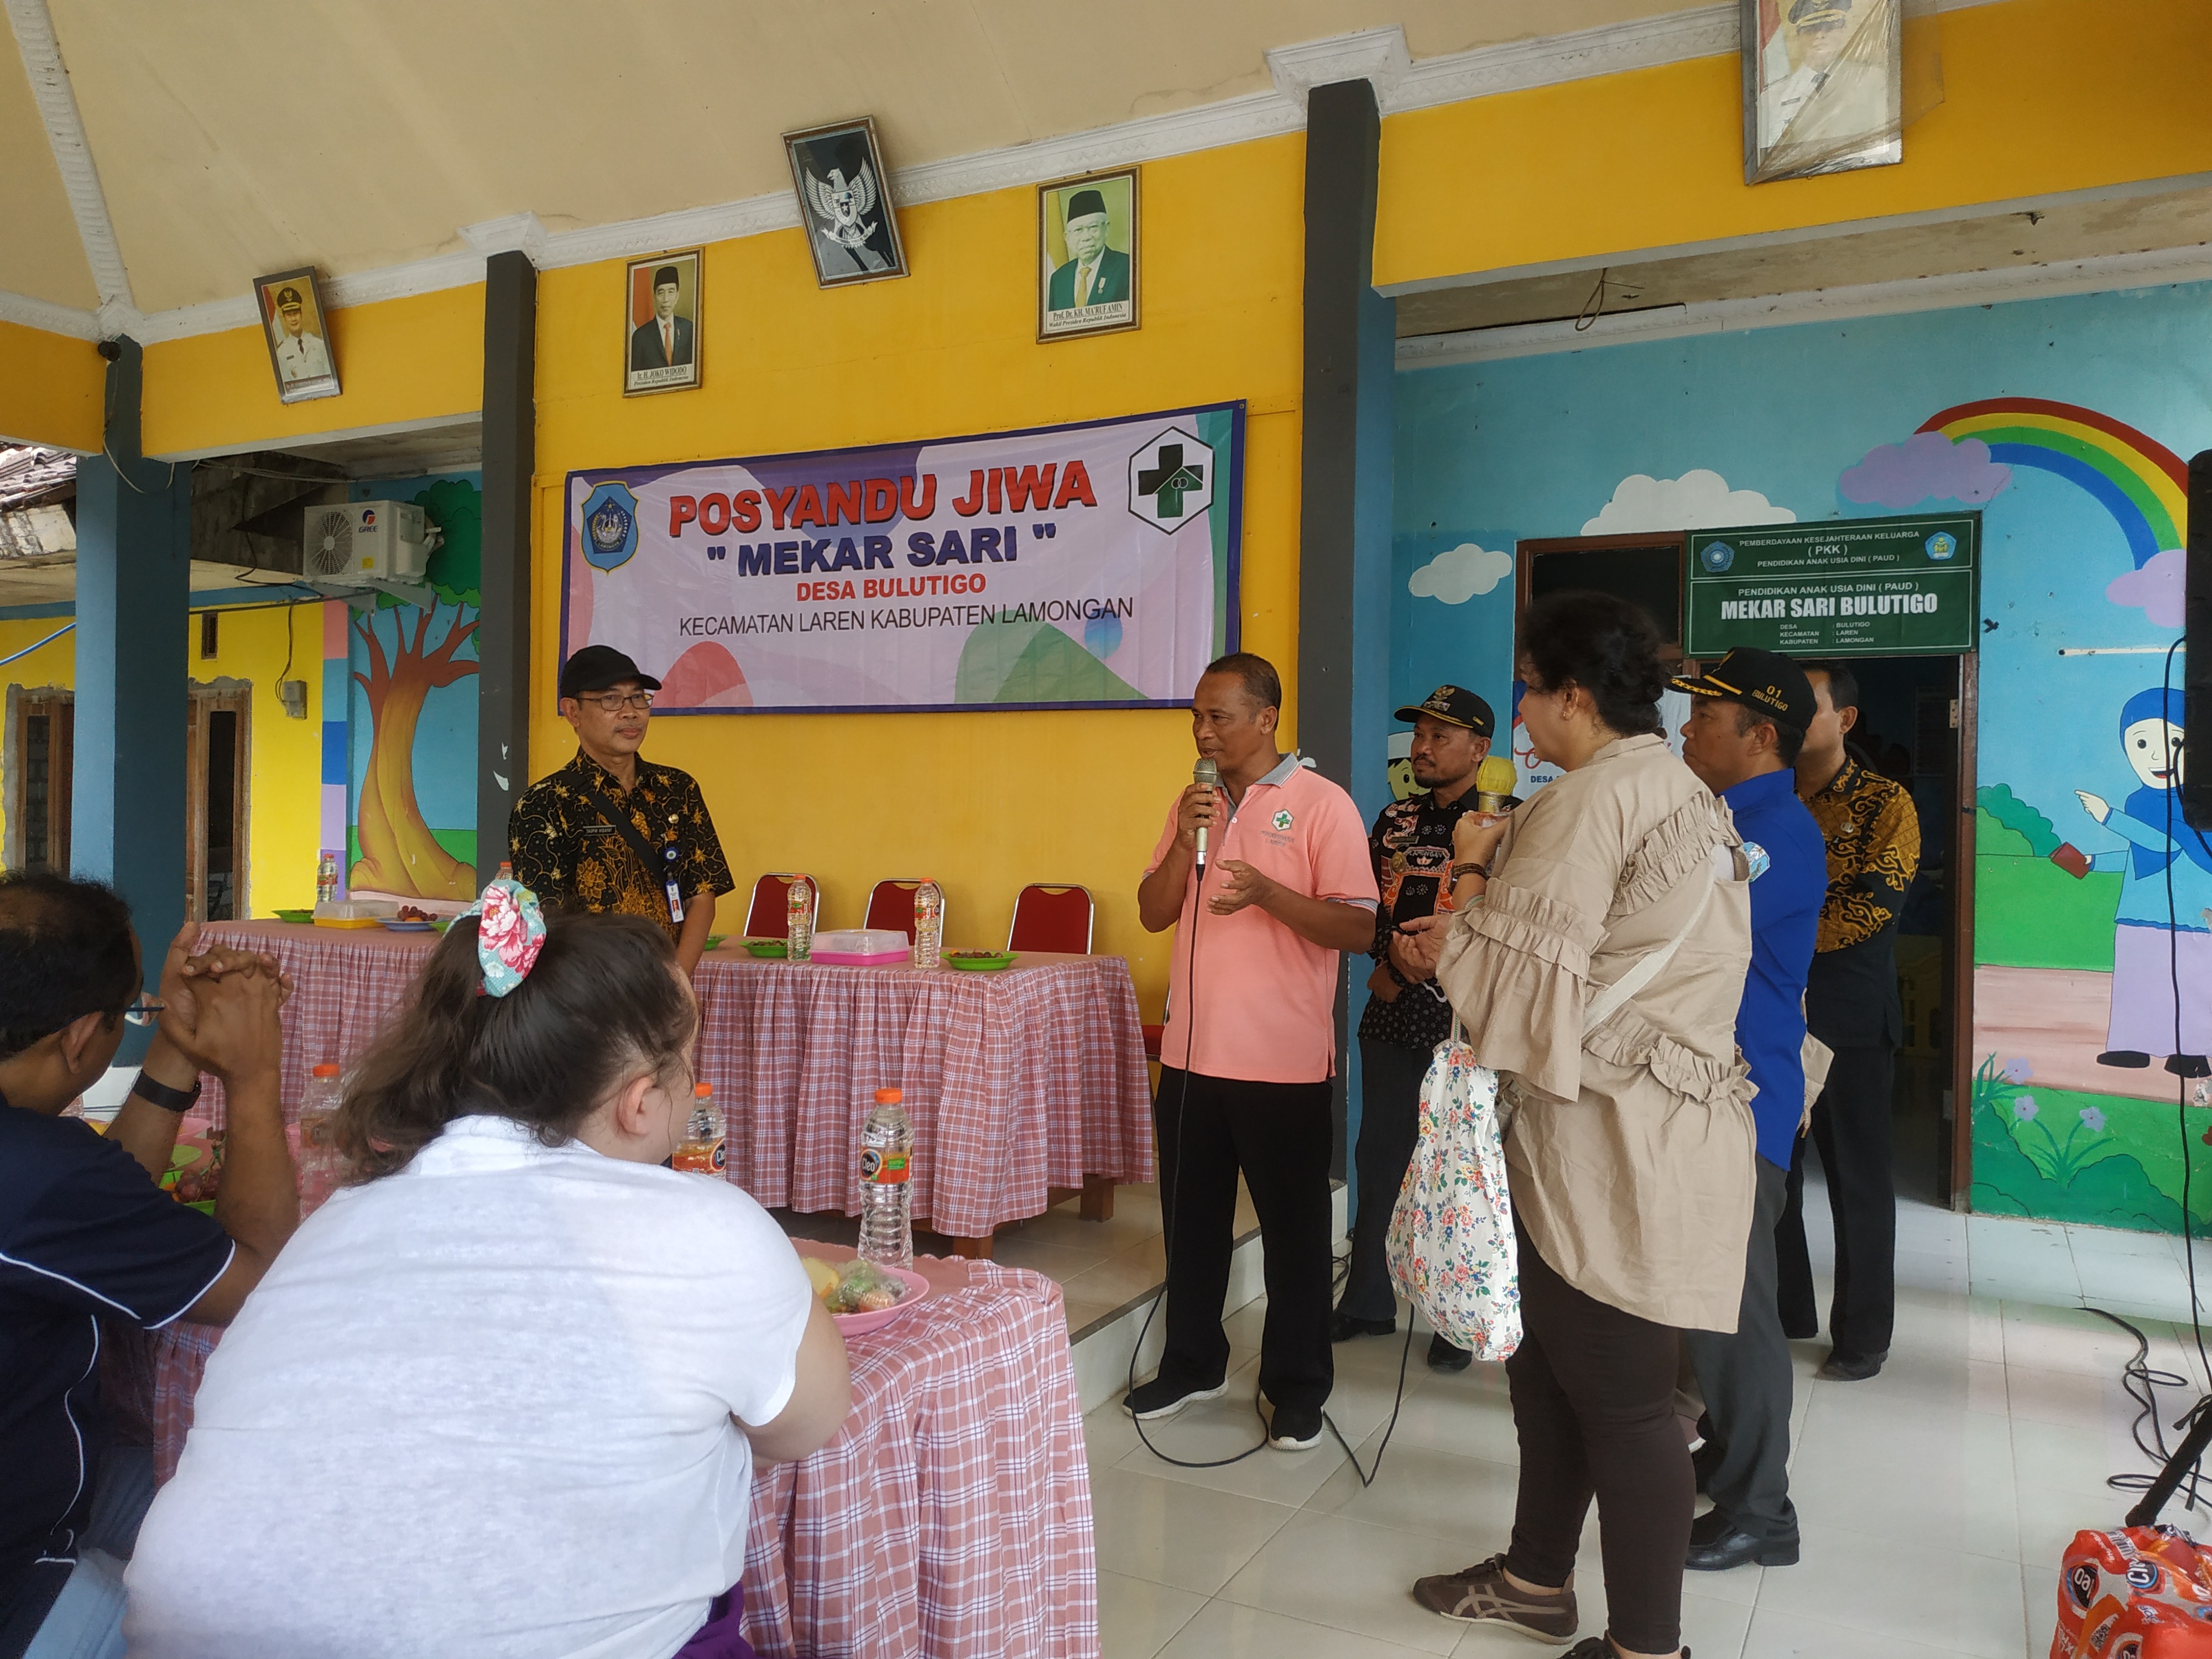 Kunjungan Tamu dari Universitas Australia dan Airlangga Surabaya dalam rangka acara Posyandu Jiwa di Desa Bulutigo Kec. Laren